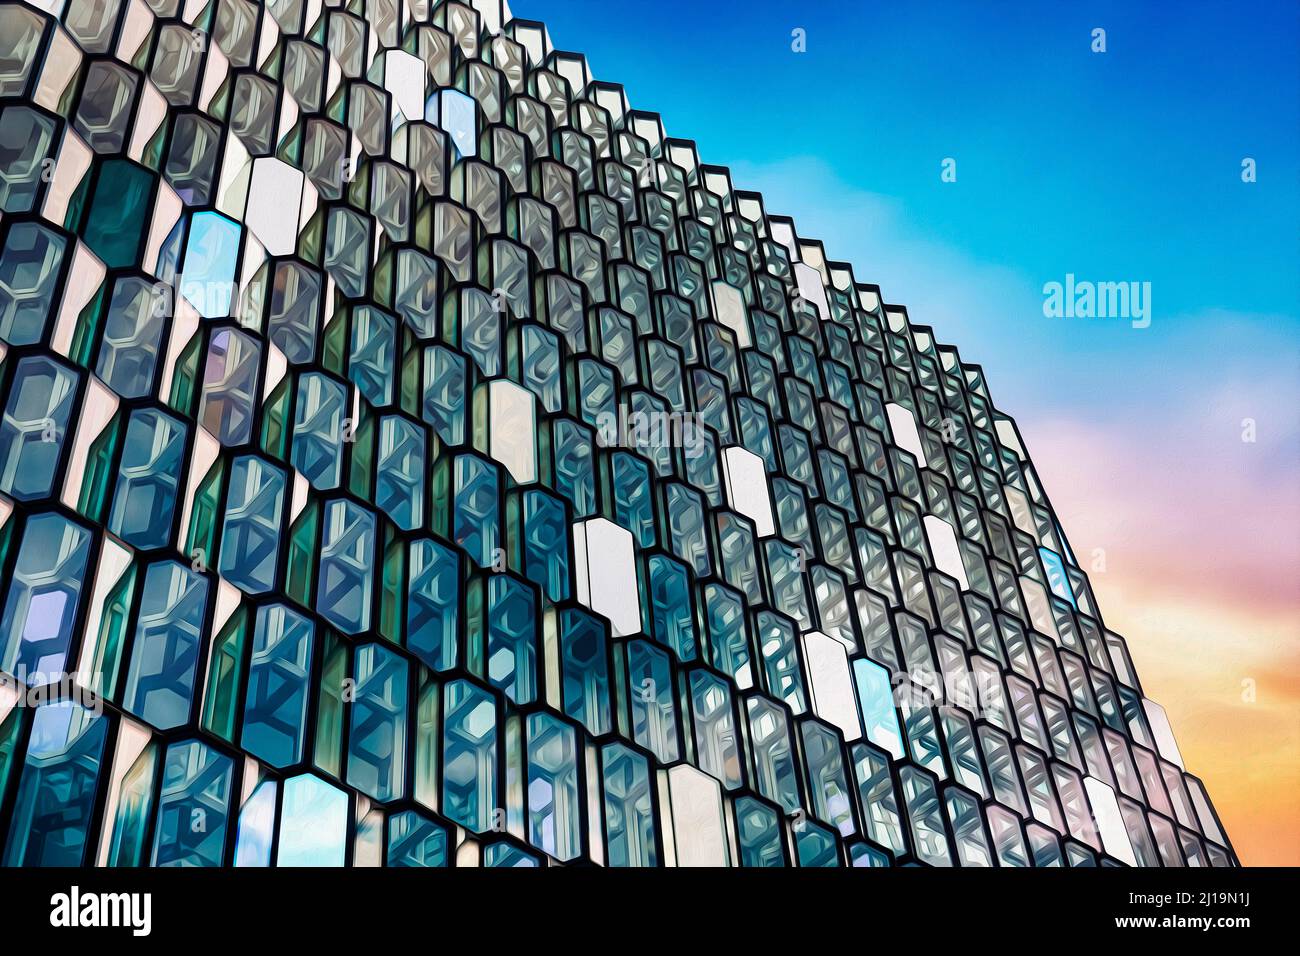 Détail de la façade de verre, salle de concert Harpa, architecte Henning Larsen, façade de l'artiste Olafur Eliasson, ciel du soir, lumière colorée Banque D'Images